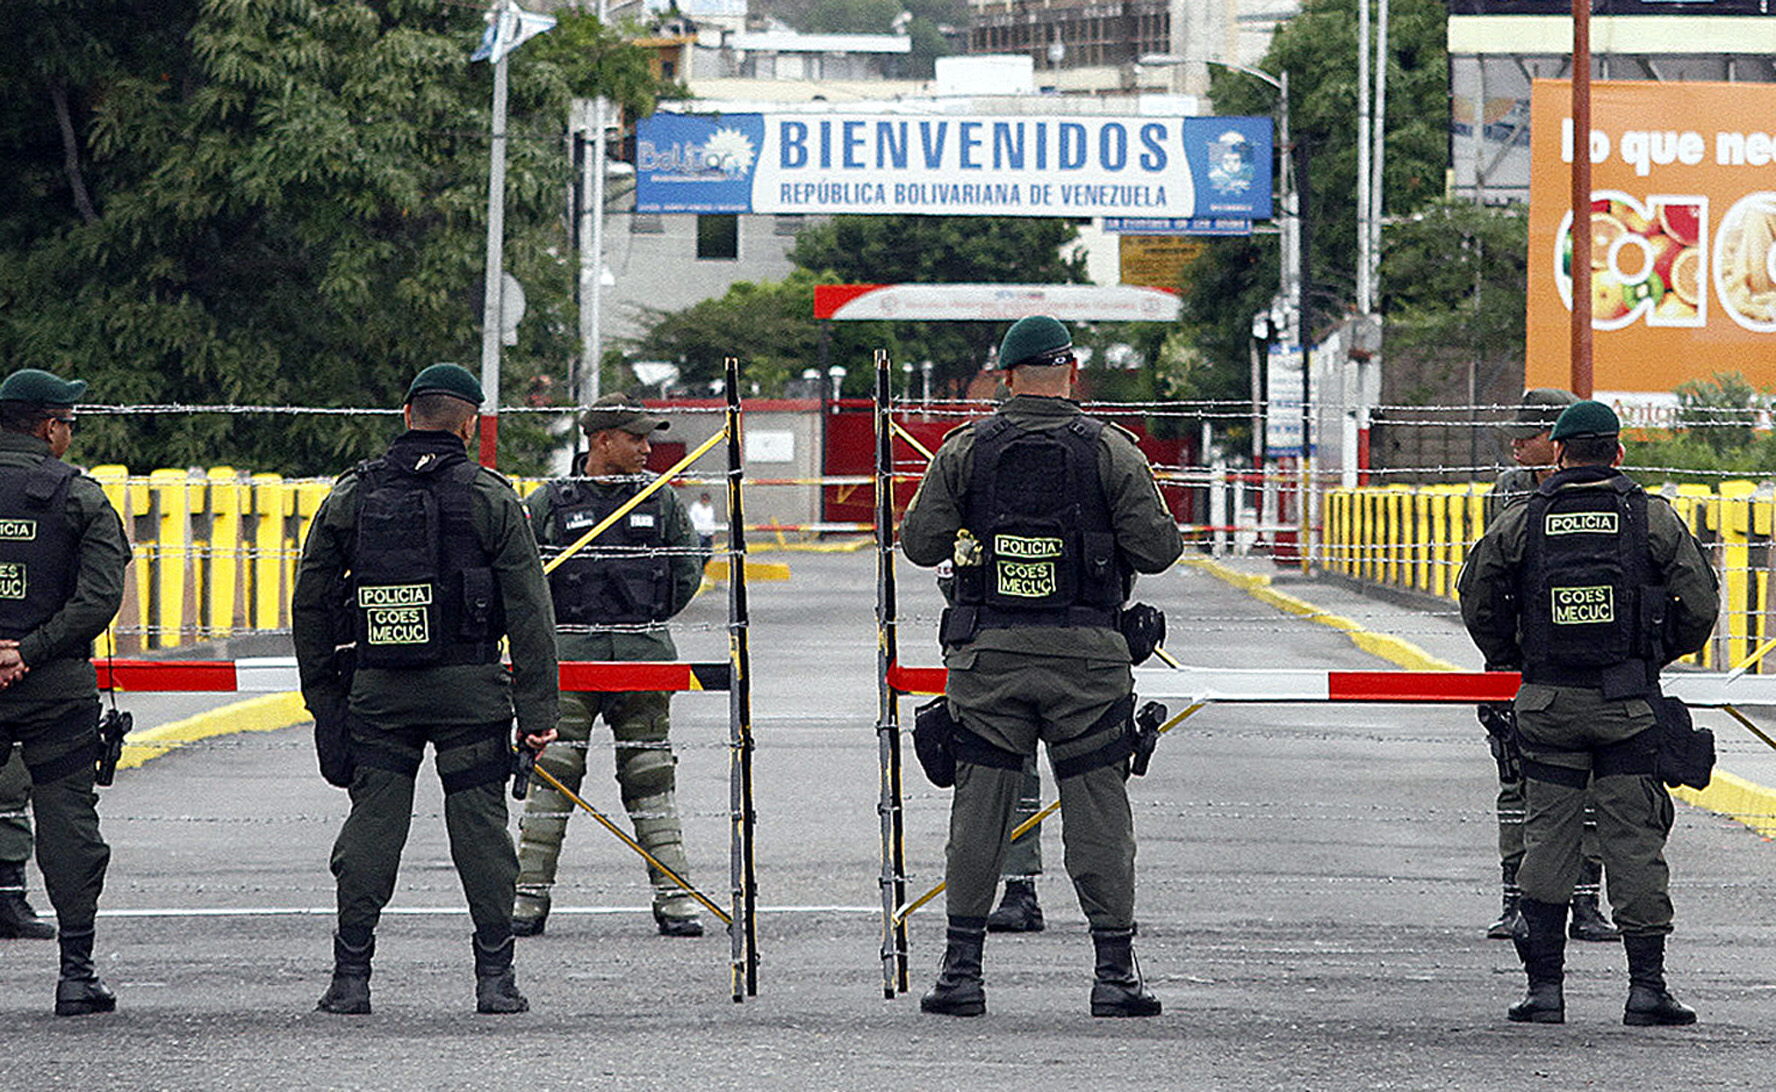 La frontera estará cerrada hasta el domingo, de acuerdo a lo anunciado por Nicolás Maduro.